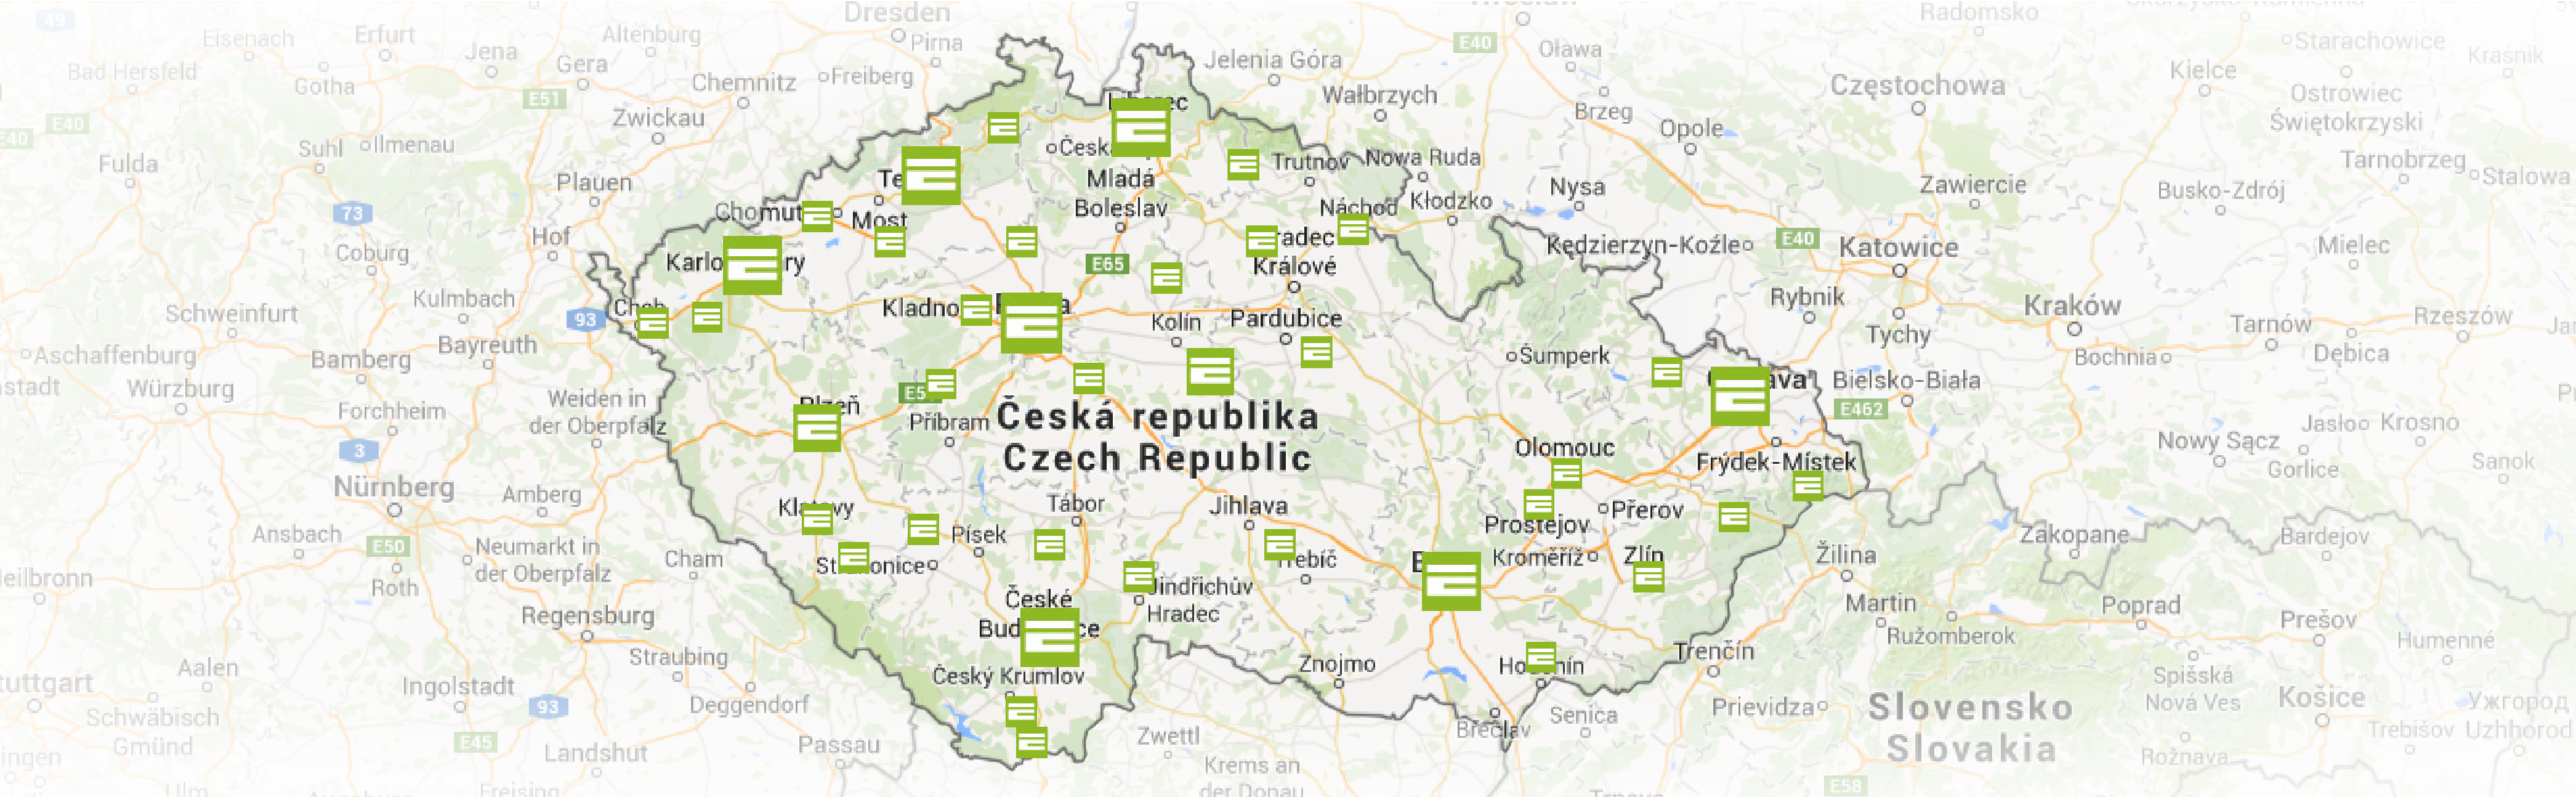 mapa_cz-01